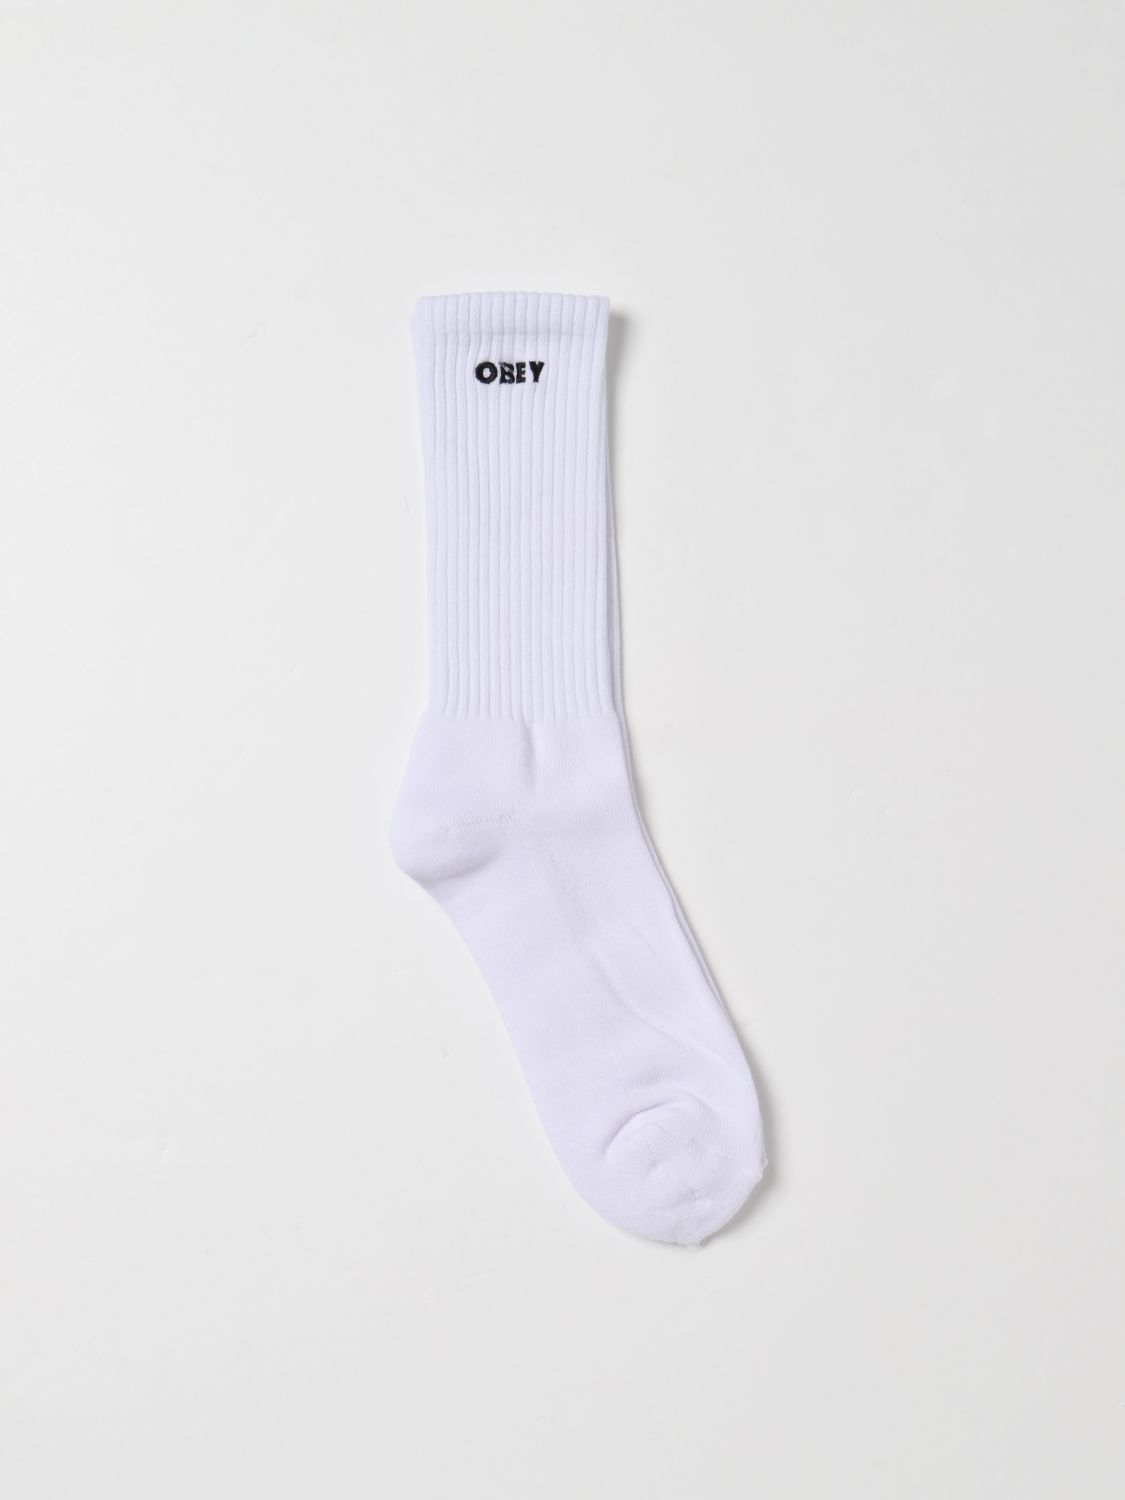 Obey Socks OBEY Men colour White